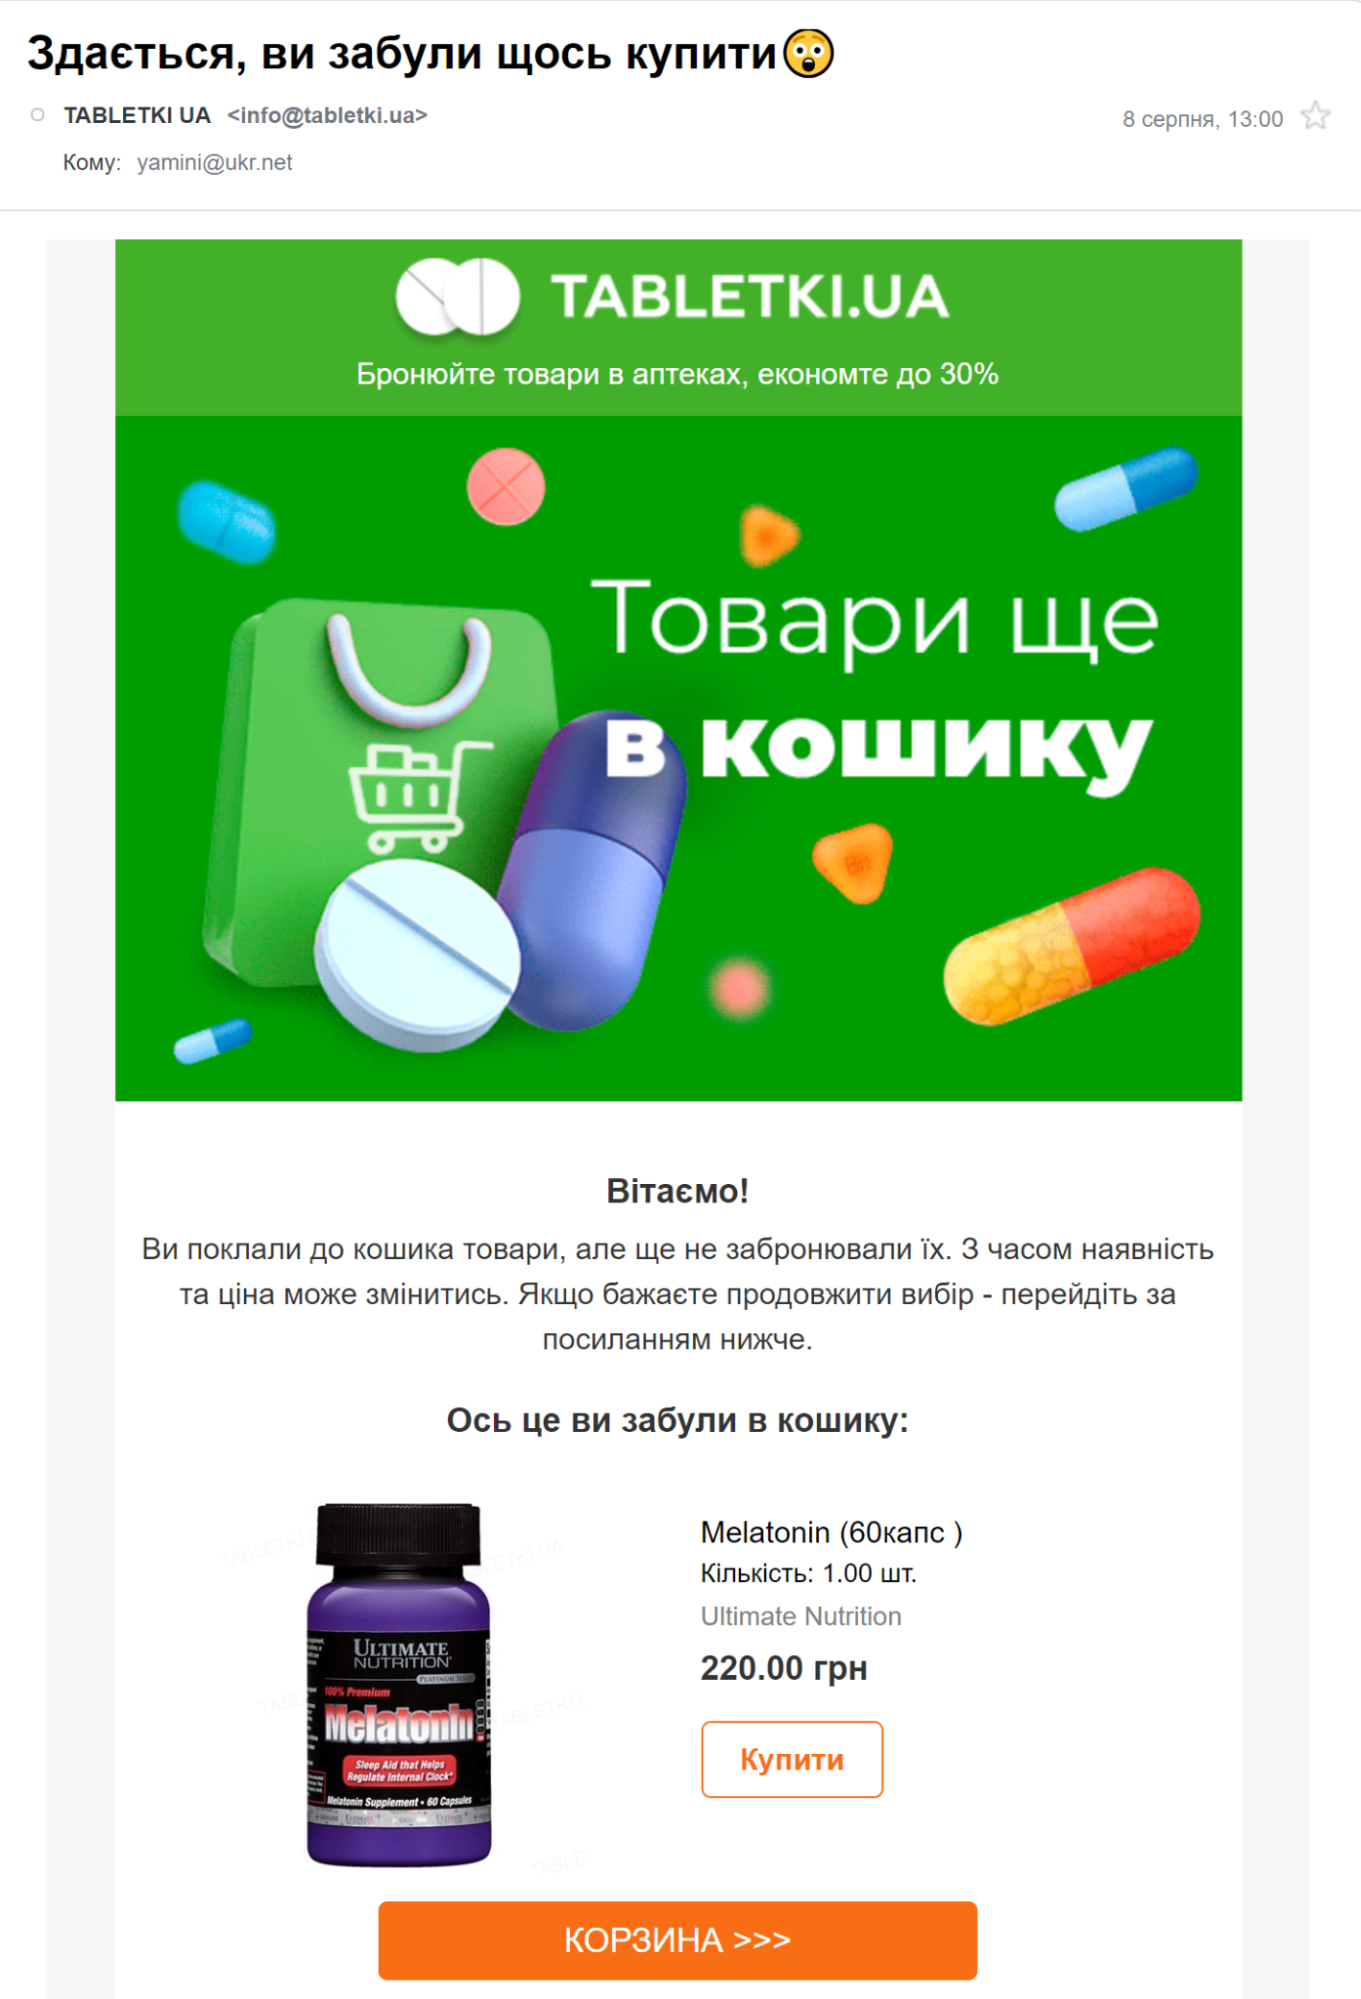 Лист-нагадування про кинутий кошик від Tabletki.ua